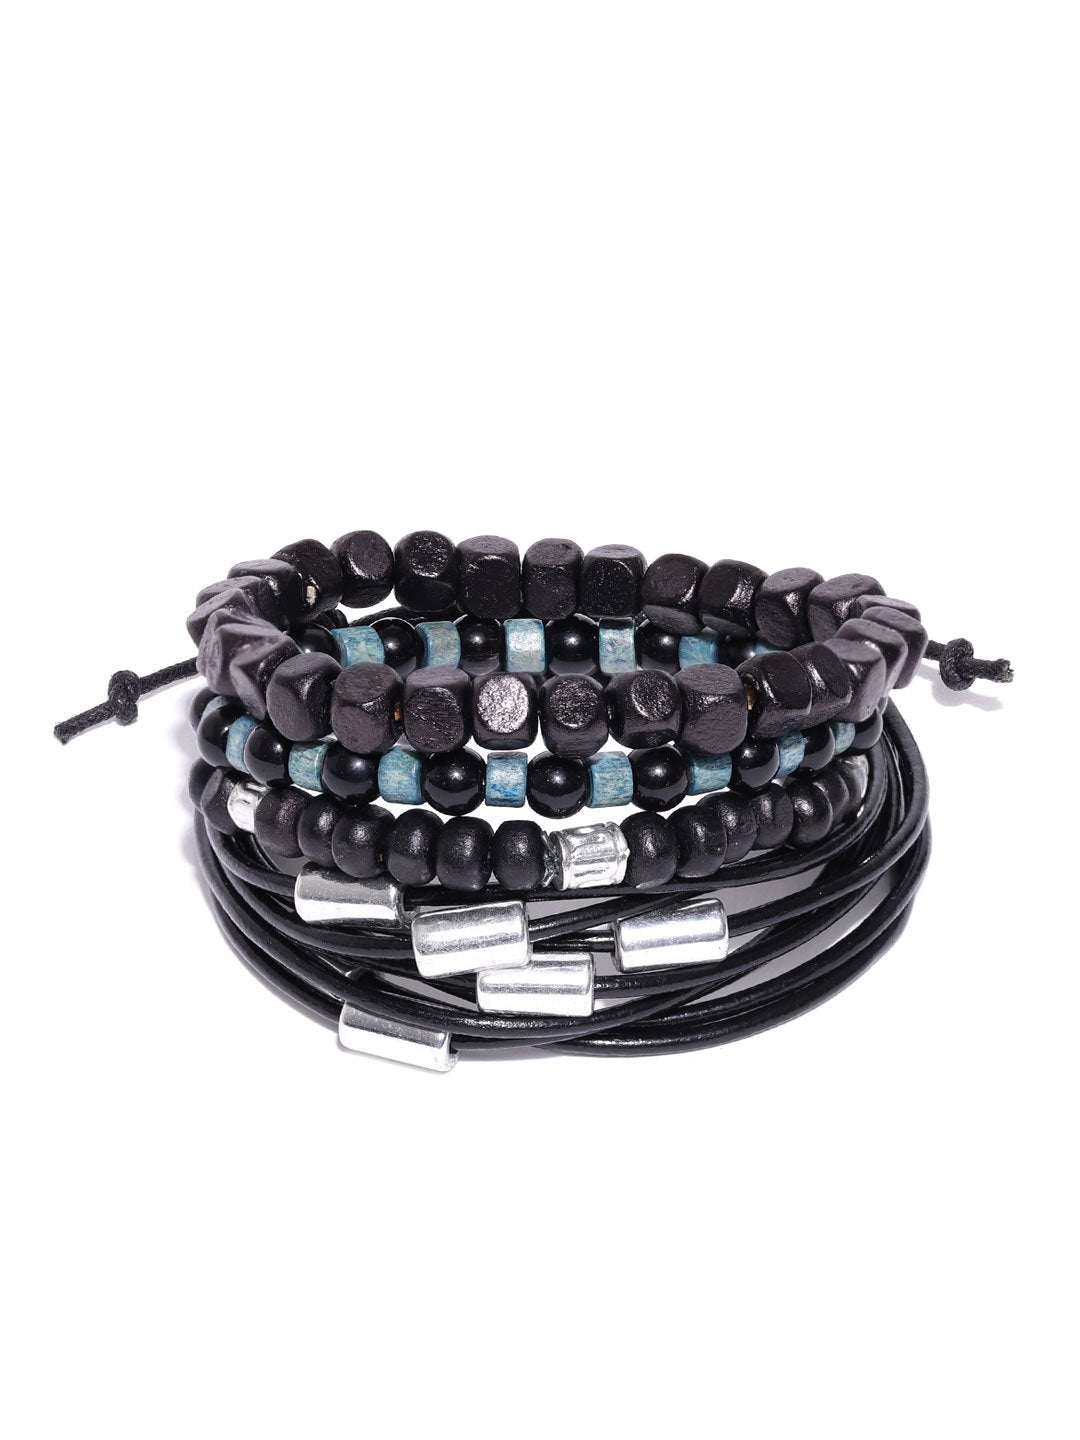 Lazy panda set of 4 black wooden beads detailing bracelets for men